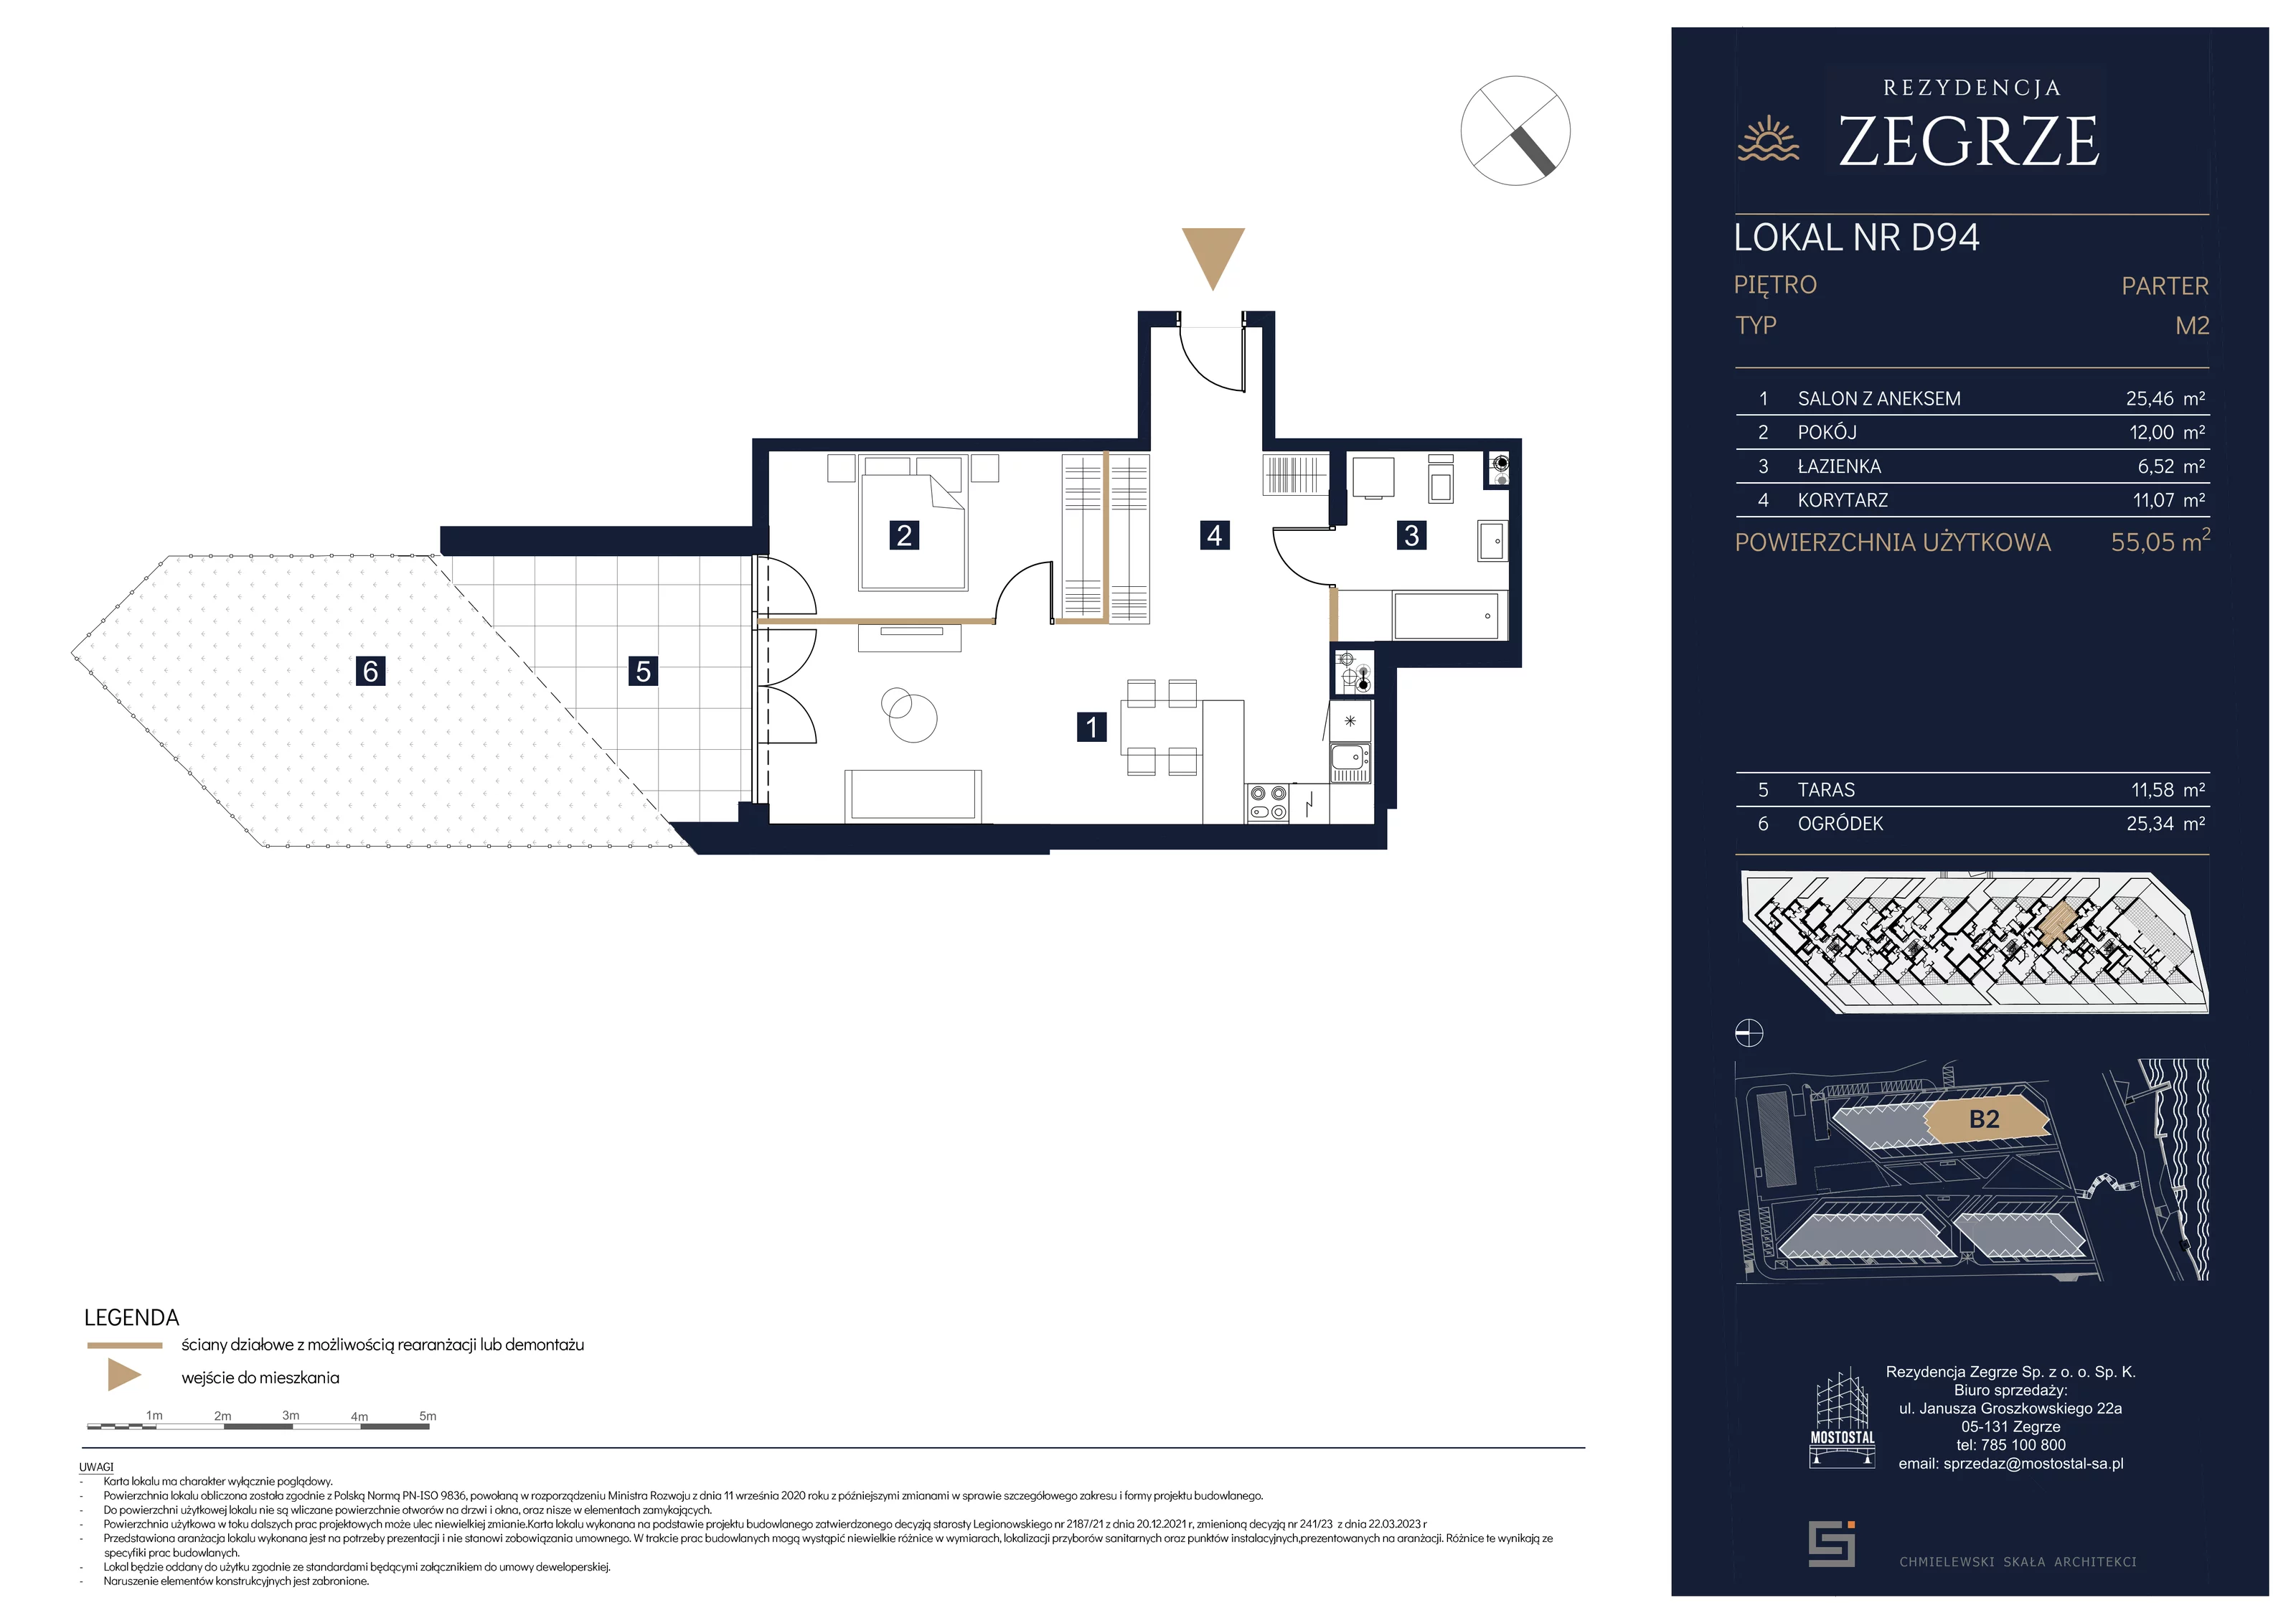 Mieszkanie 55,05 m², parter, oferta nr B2.1.D.94, Rezydencja Zegrze II, Zegrze, ul. Groszkowskiego 22A